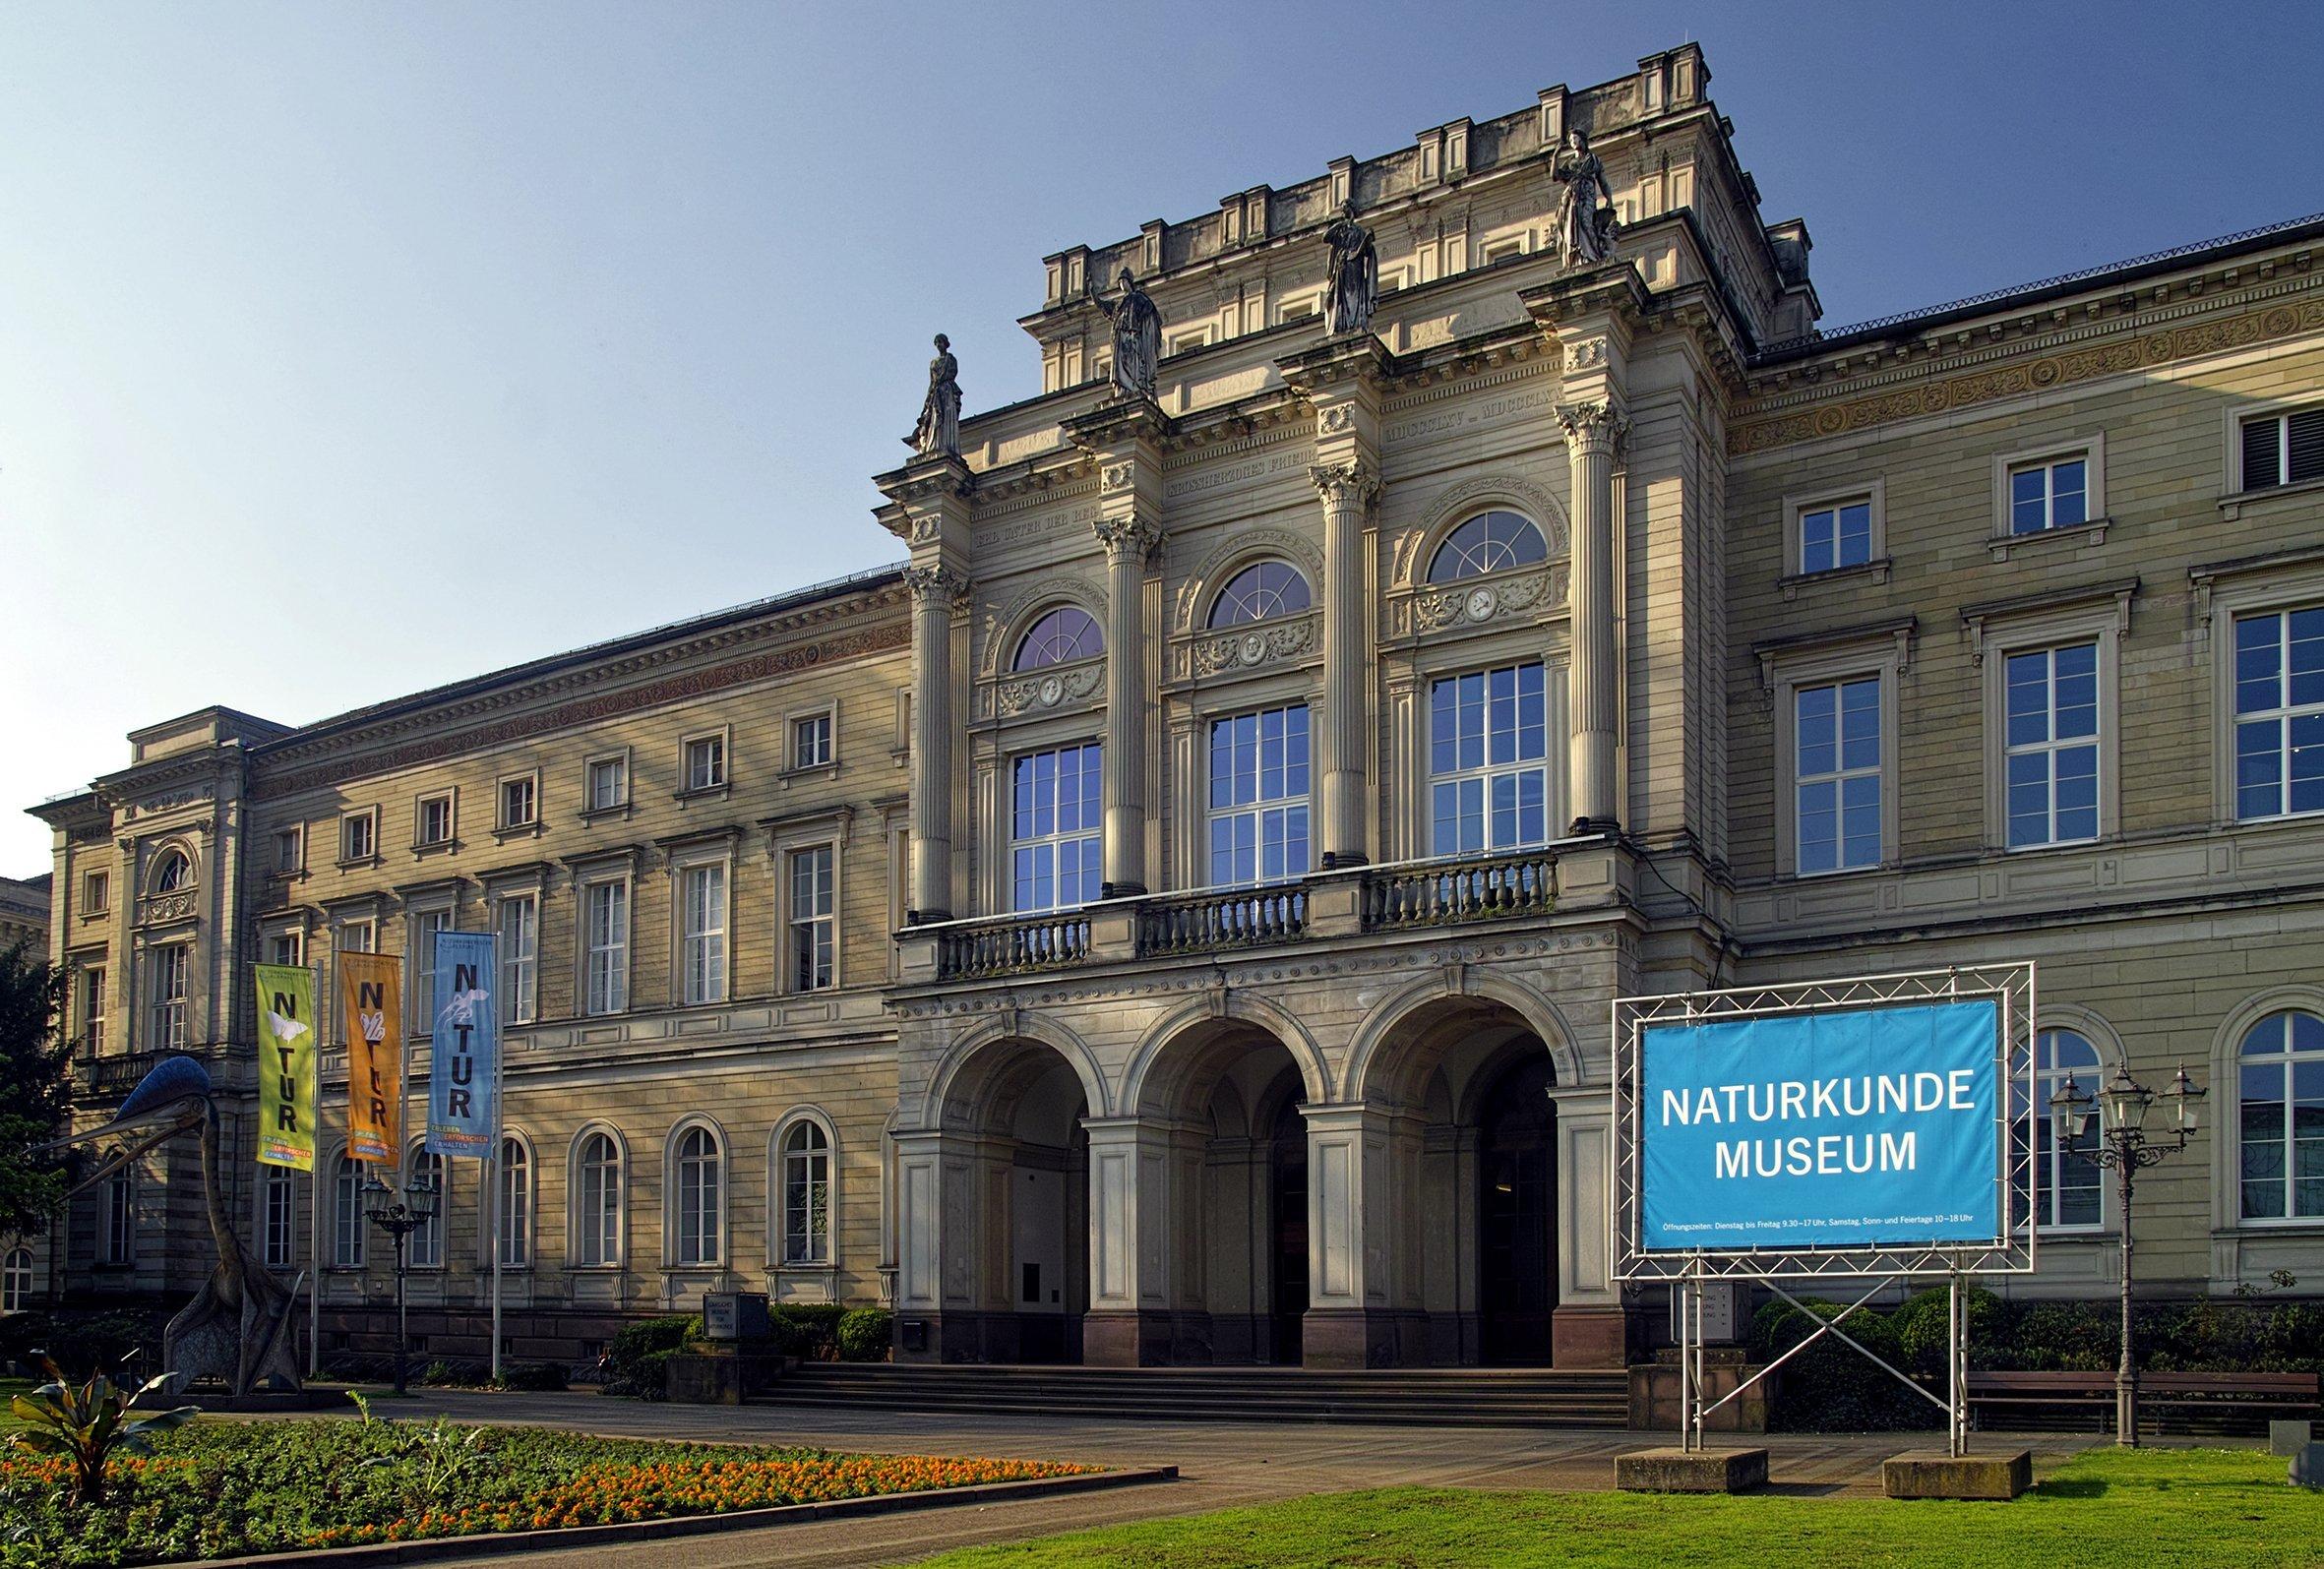 Außenansicht des Naturkundemuseums Karlsruhe aus dem 19. Jahrhundert. Die Mitte des historistischen Gebäudes ist durch eine Kuppel hervorgehoben.